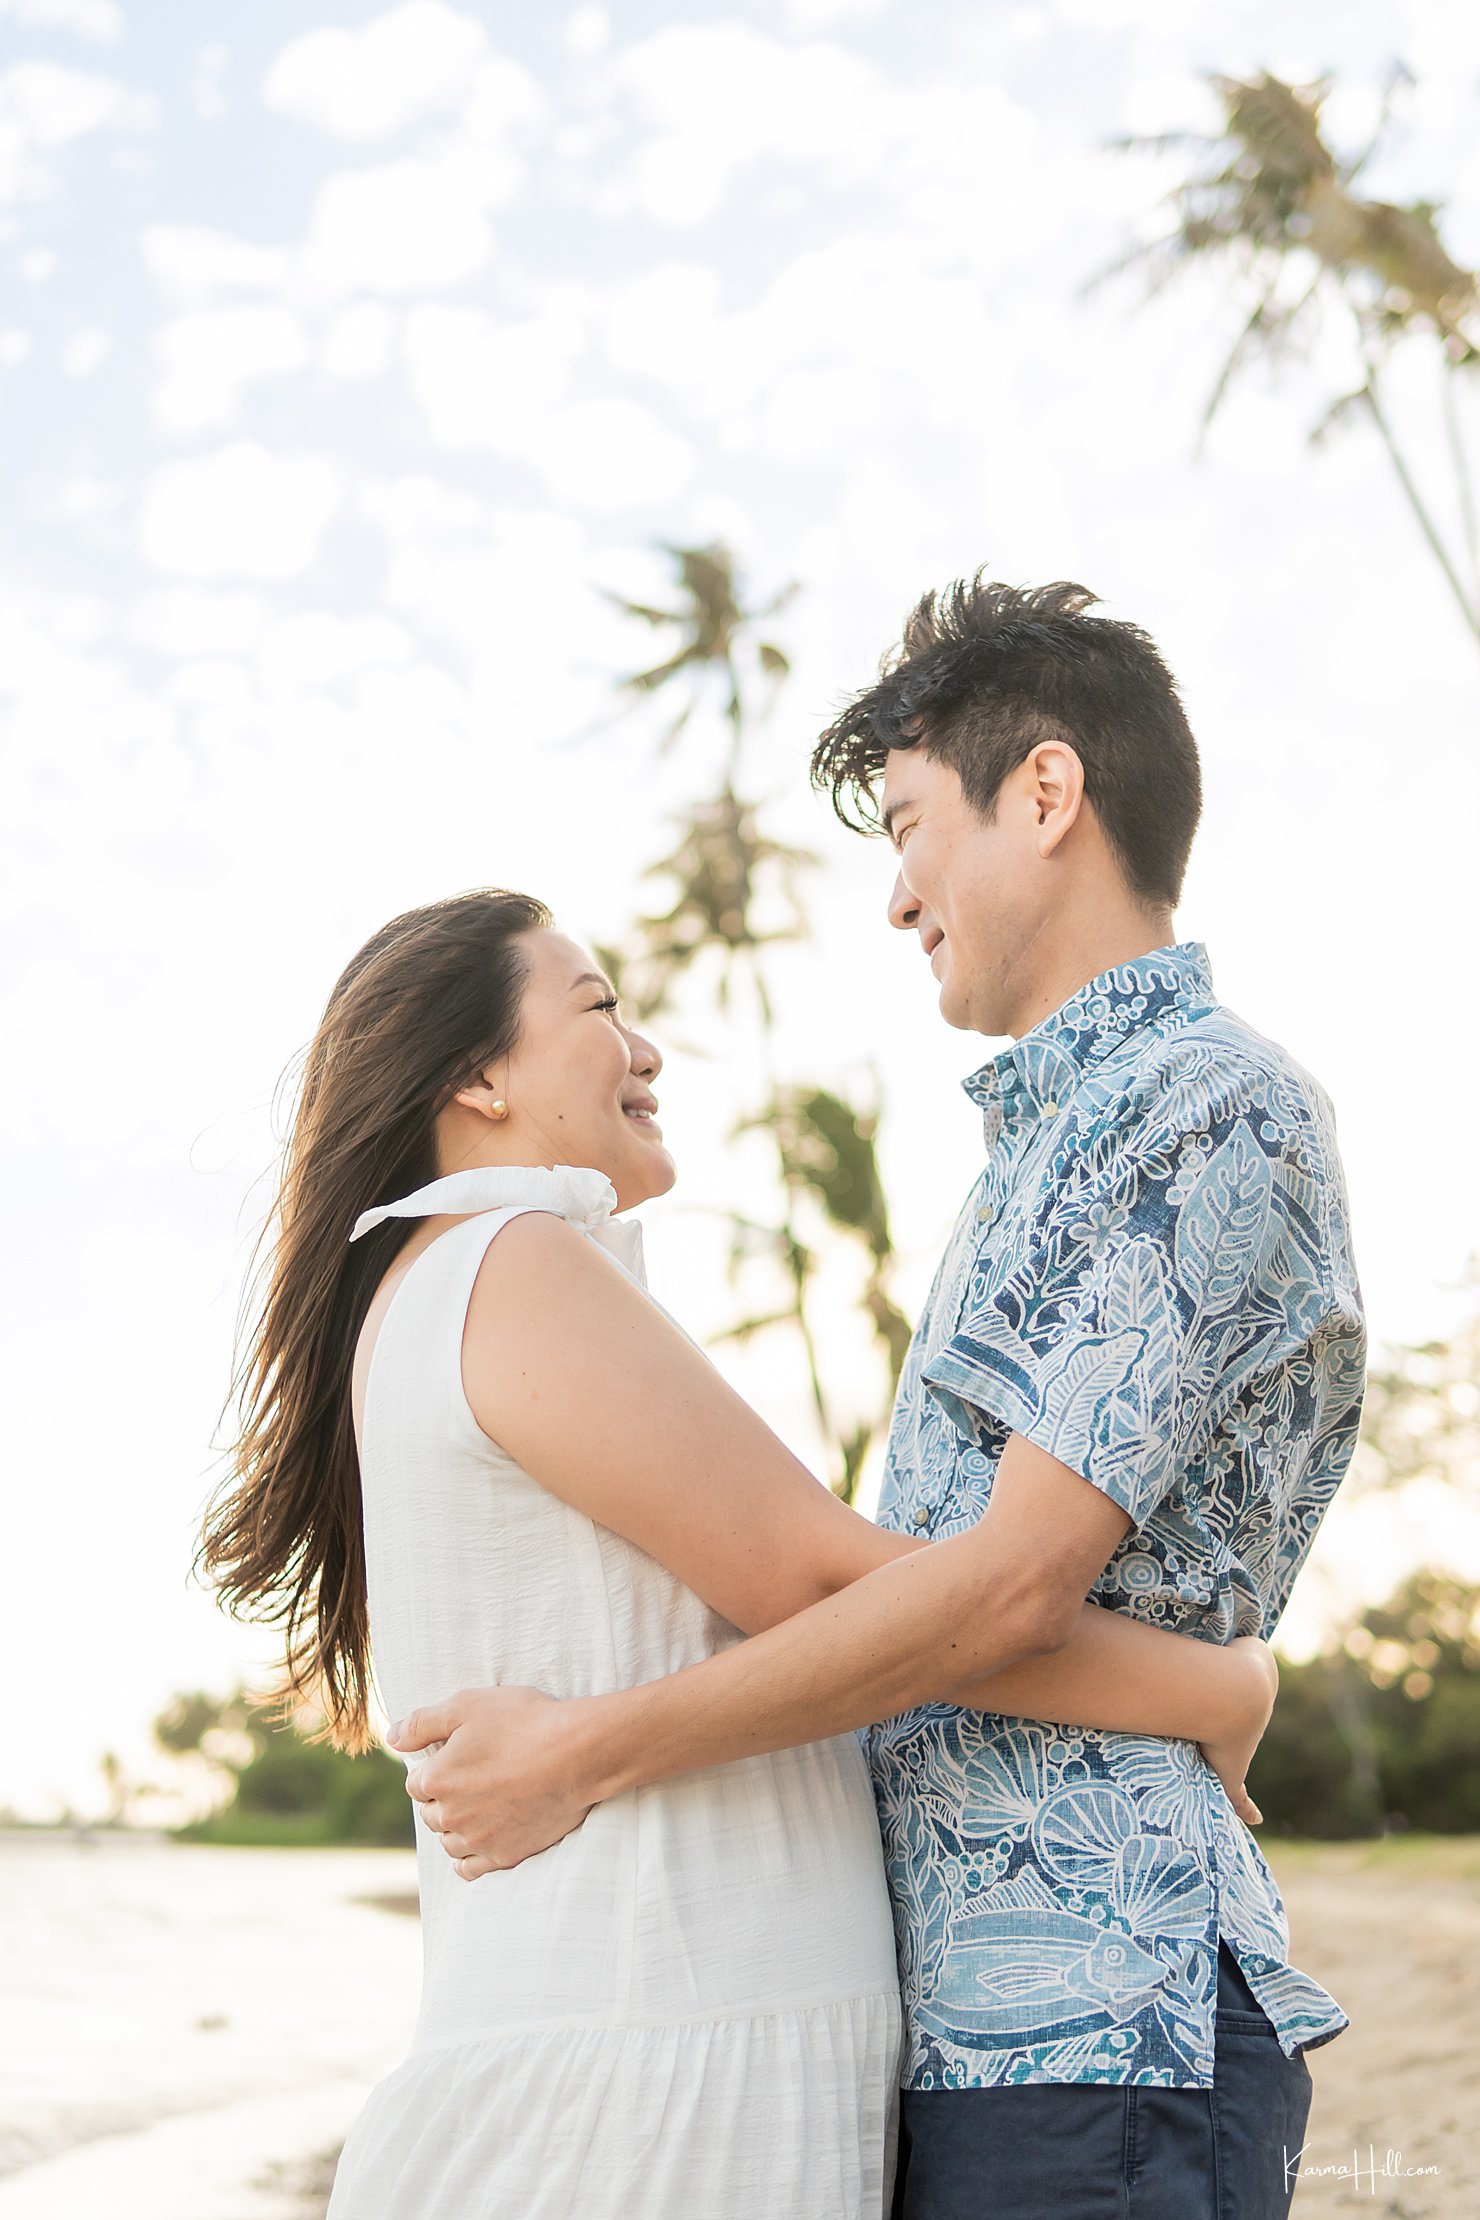 Oahu couples photographers